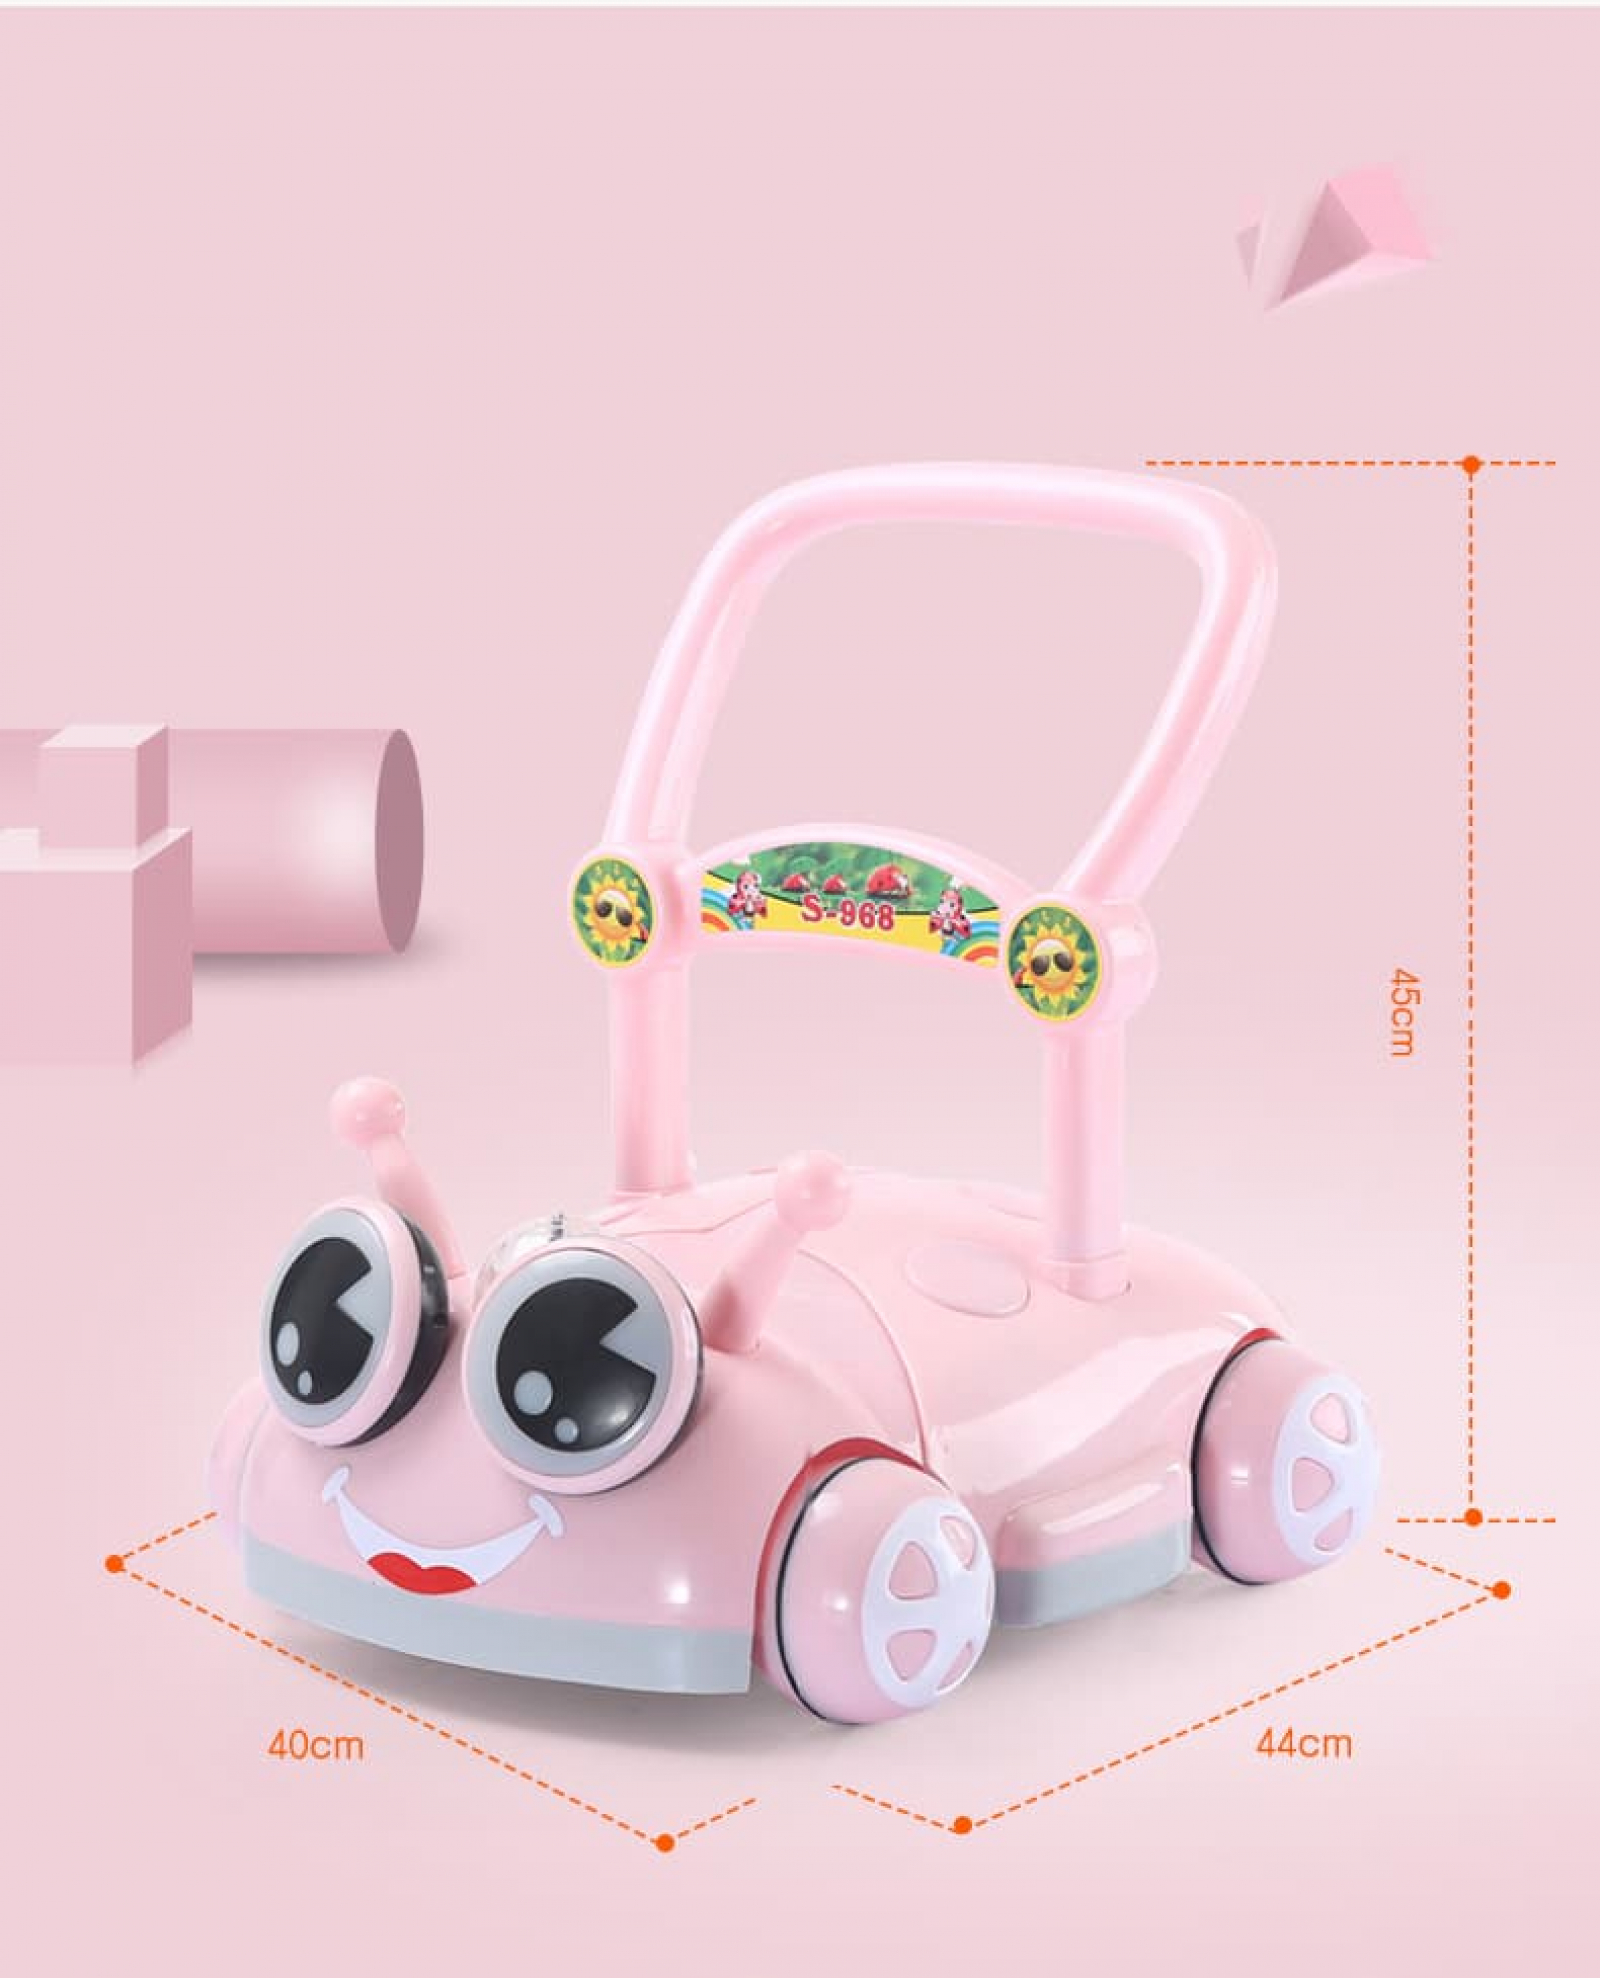 Xe đẩy em bé là món đồ không thể thiếu cho những bậc phụ huynh có em bé nhỏ. Xem hình ảnh này để tìm hiểu thêm về loại xe đẩy tiện ích và thông minh giúp bạn đưa con đi đây đó một cách dễ dàng nhất.